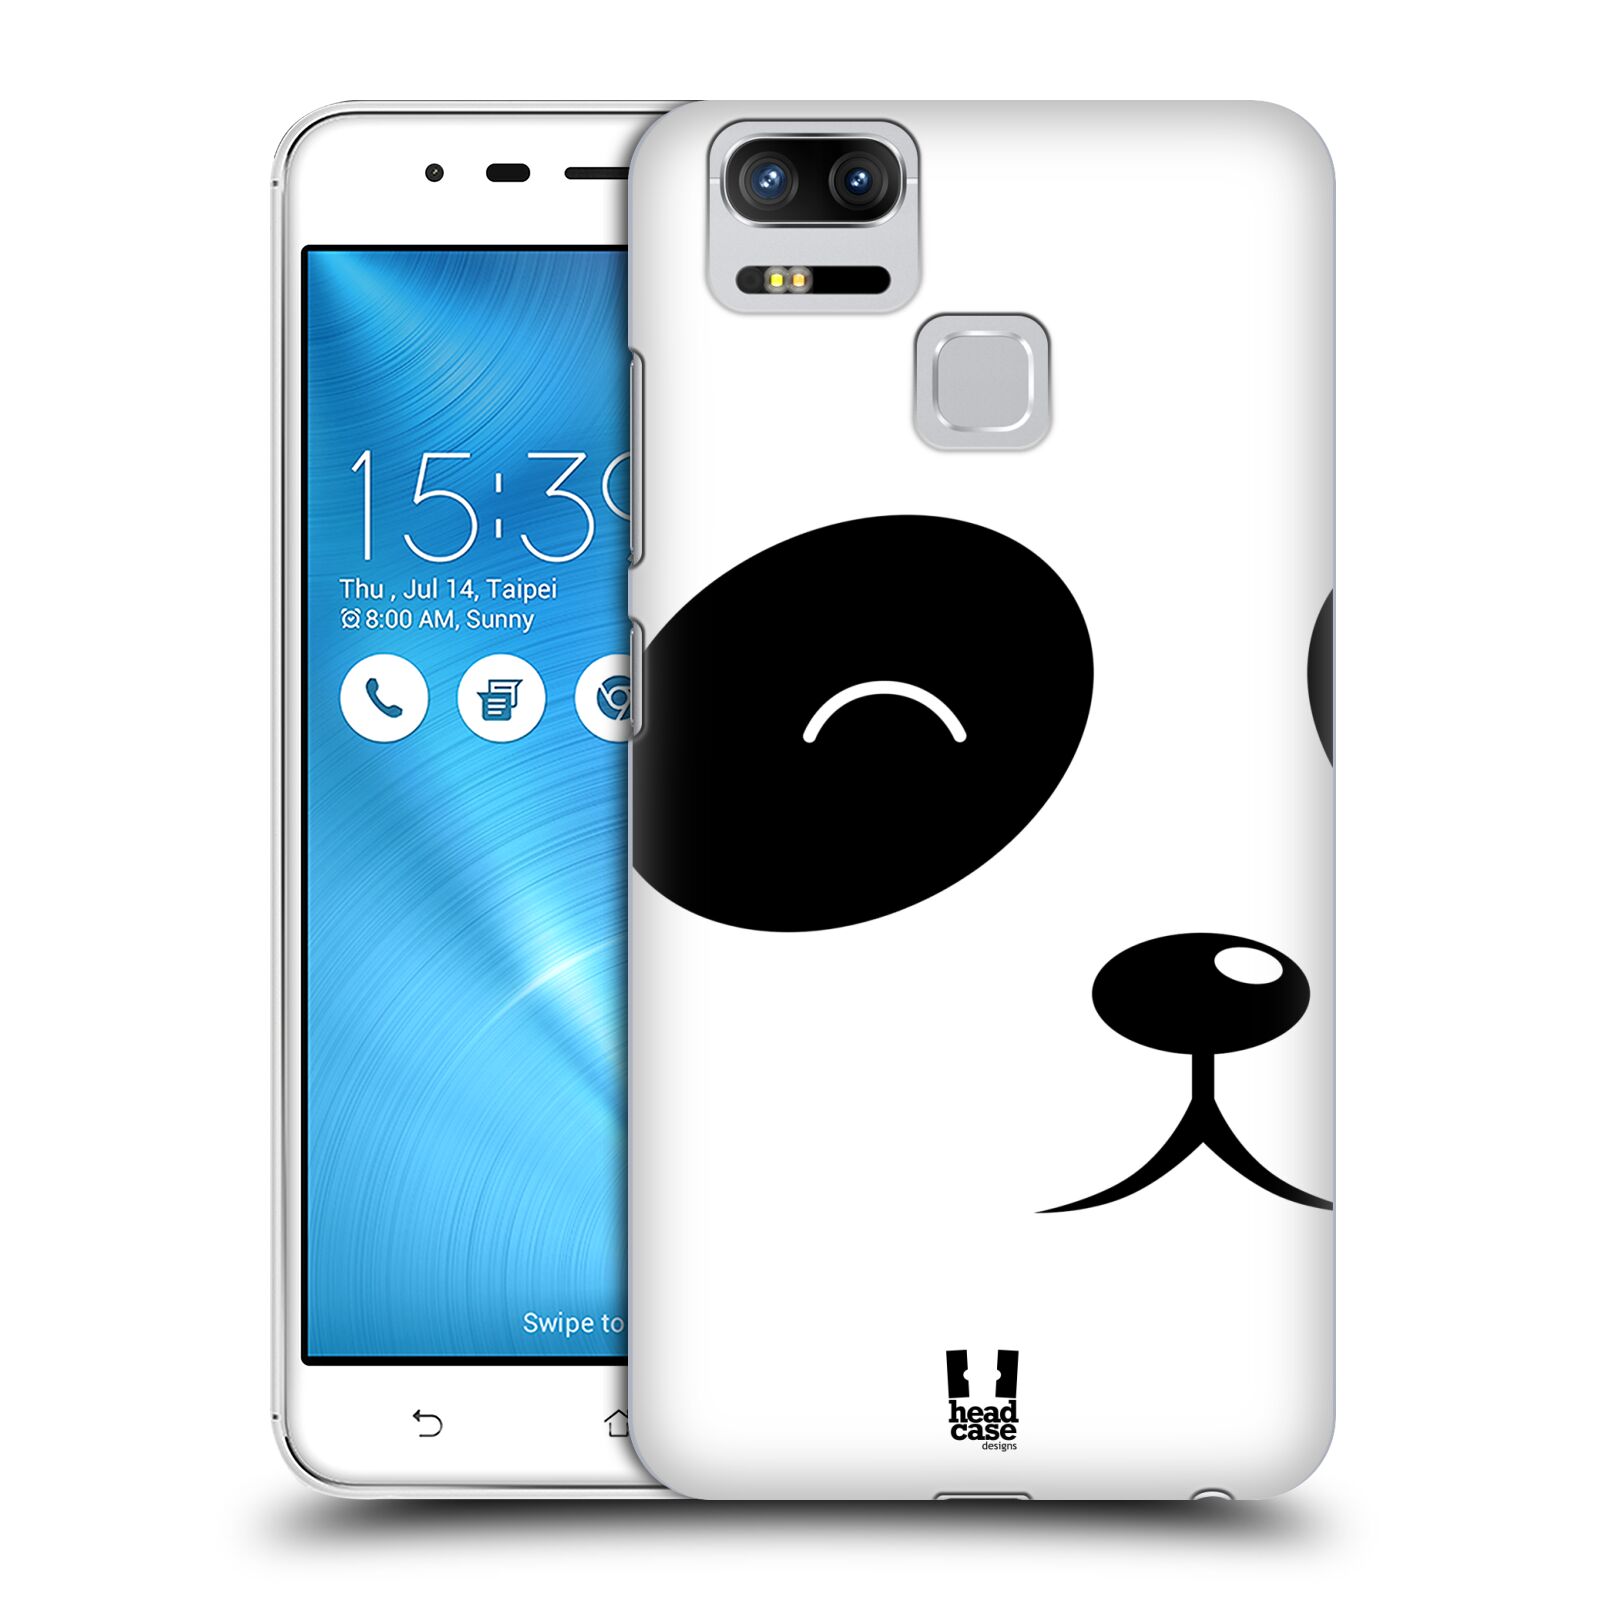 HEAD CASE plastový obal na mobil Asus Zenfone 3 Zoom ZE553KL vzor Celá tvář zvíře kreslený portrét medvídek panda